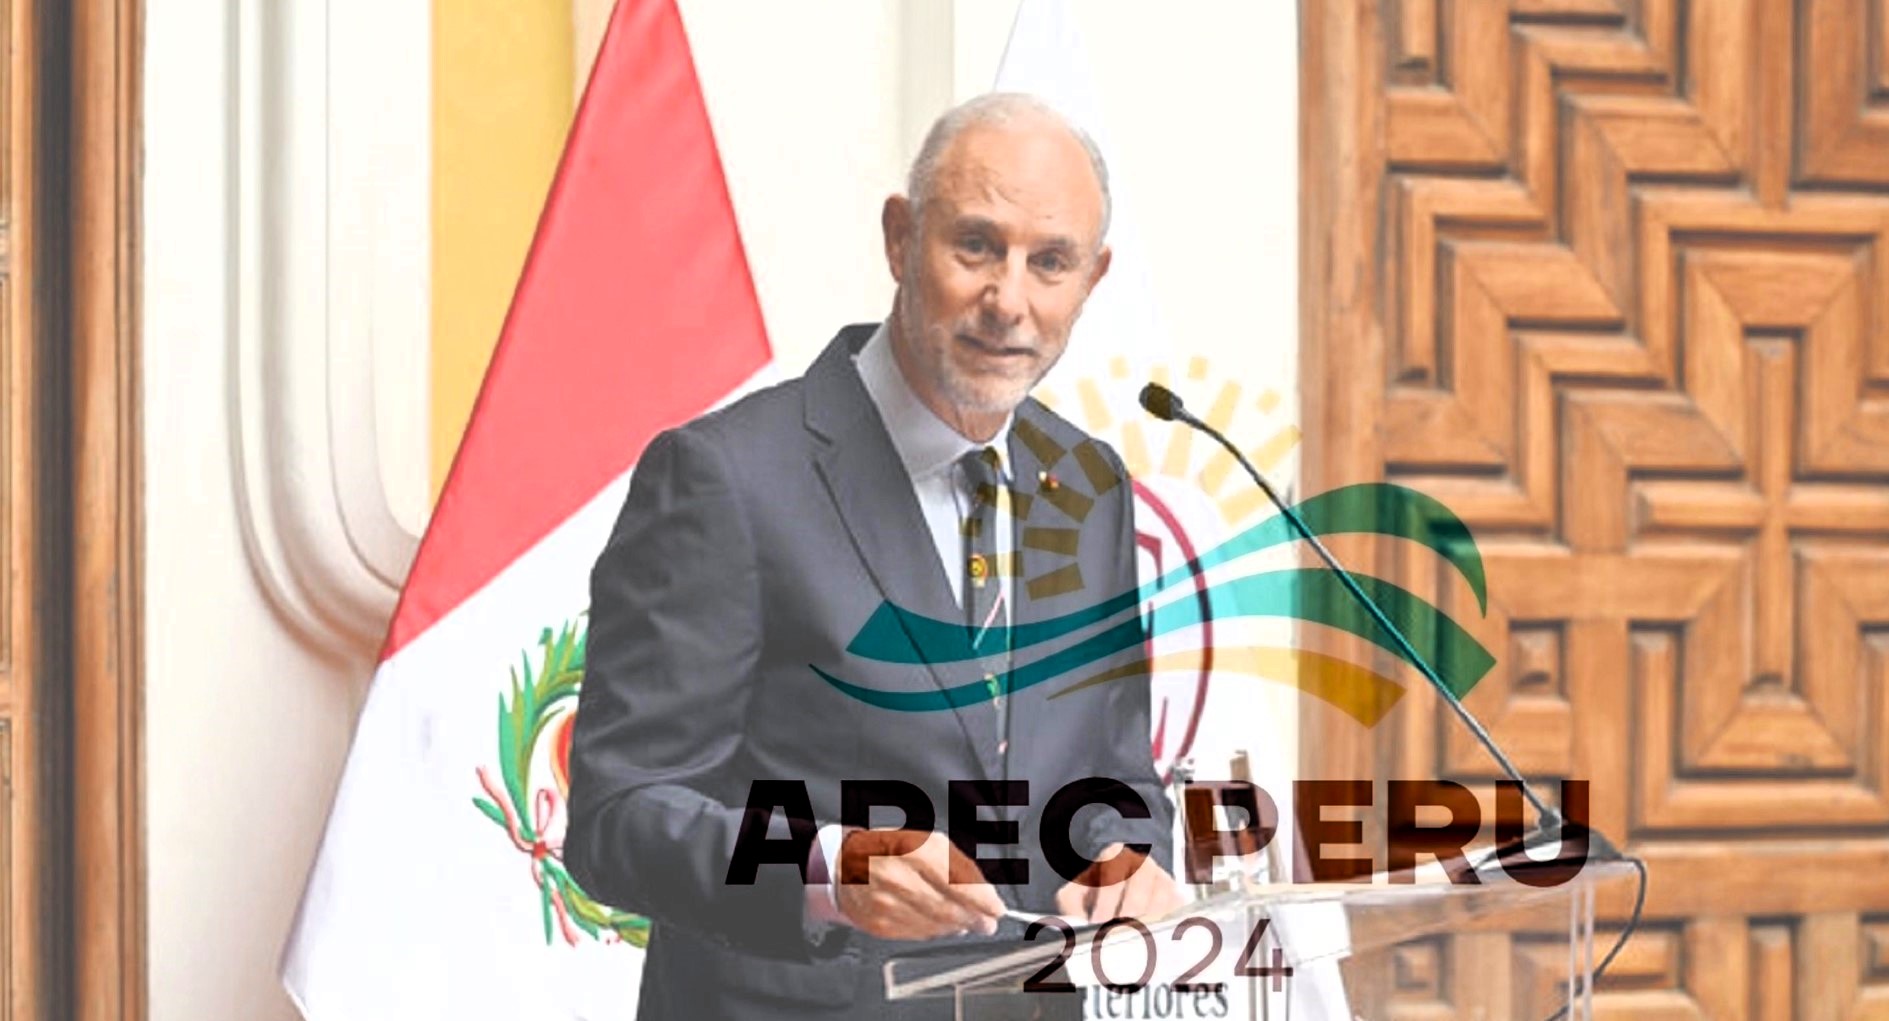 Canciller González-Olaechea Franco: Reafirmó el compromiso del gobierno del Foro de Cooperación Económica Asia-Pacífico 2024 (APEC).